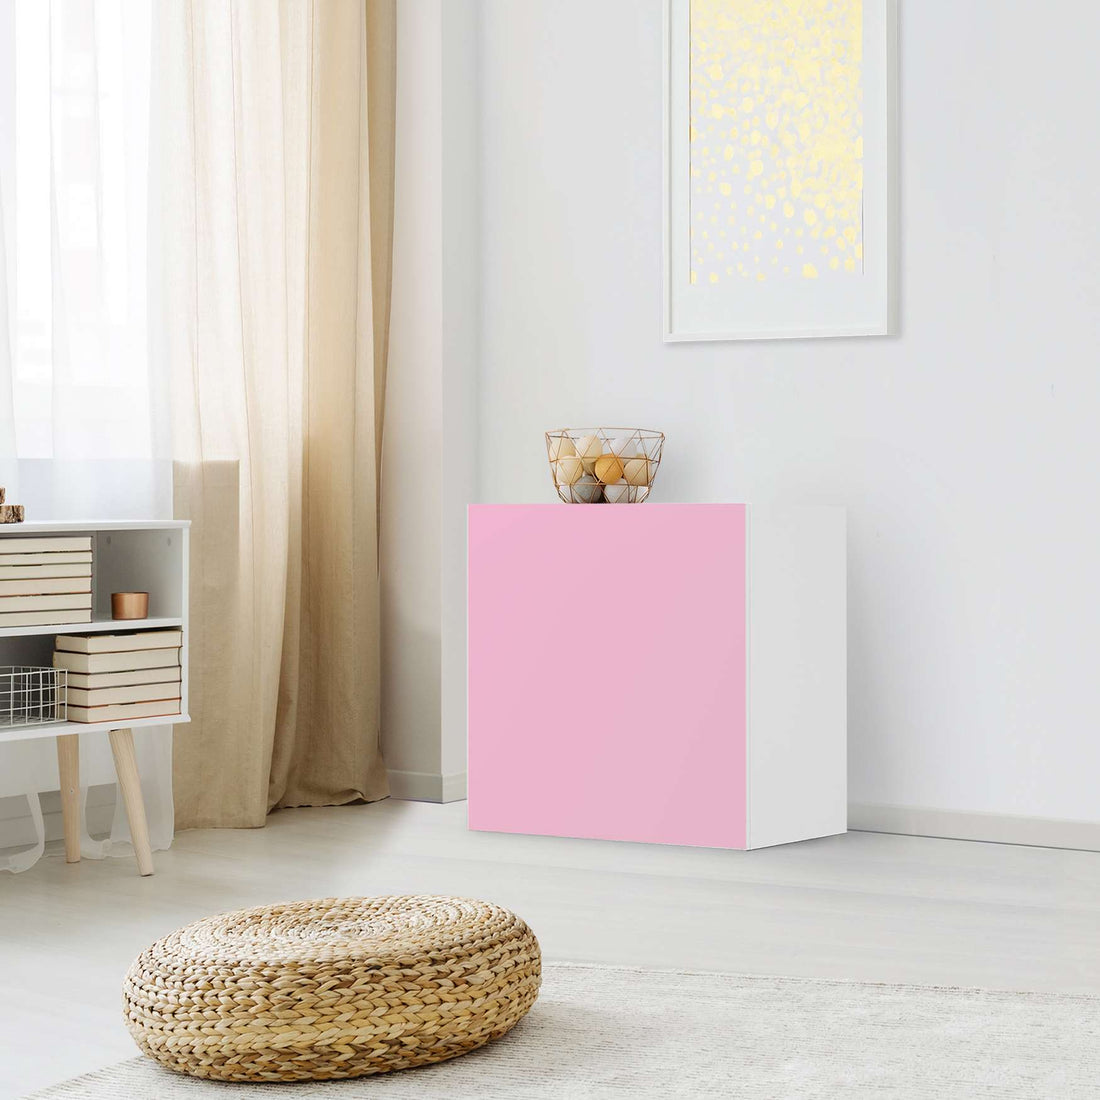 Klebefolie für Möbel Pink Light - IKEA Besta Regal 1 Türe - Wohnzimmer